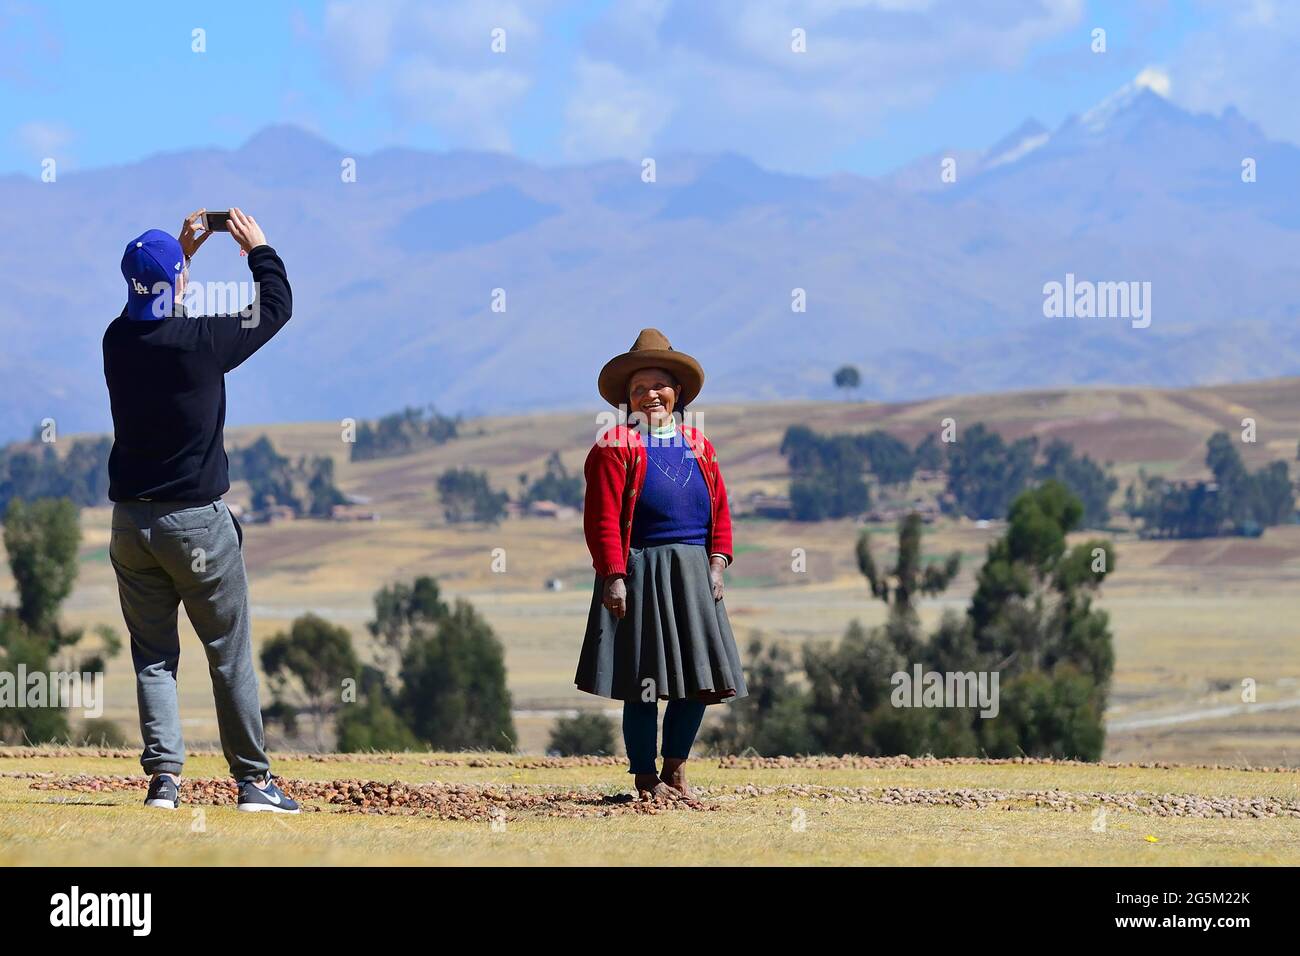 La vieille femme indigène est photographiée faisant chuño, pommes de terre séchées, Chinchero, région de Cusco, province d'Urubamba, Pérou, Amérique du Sud Banque D'Images